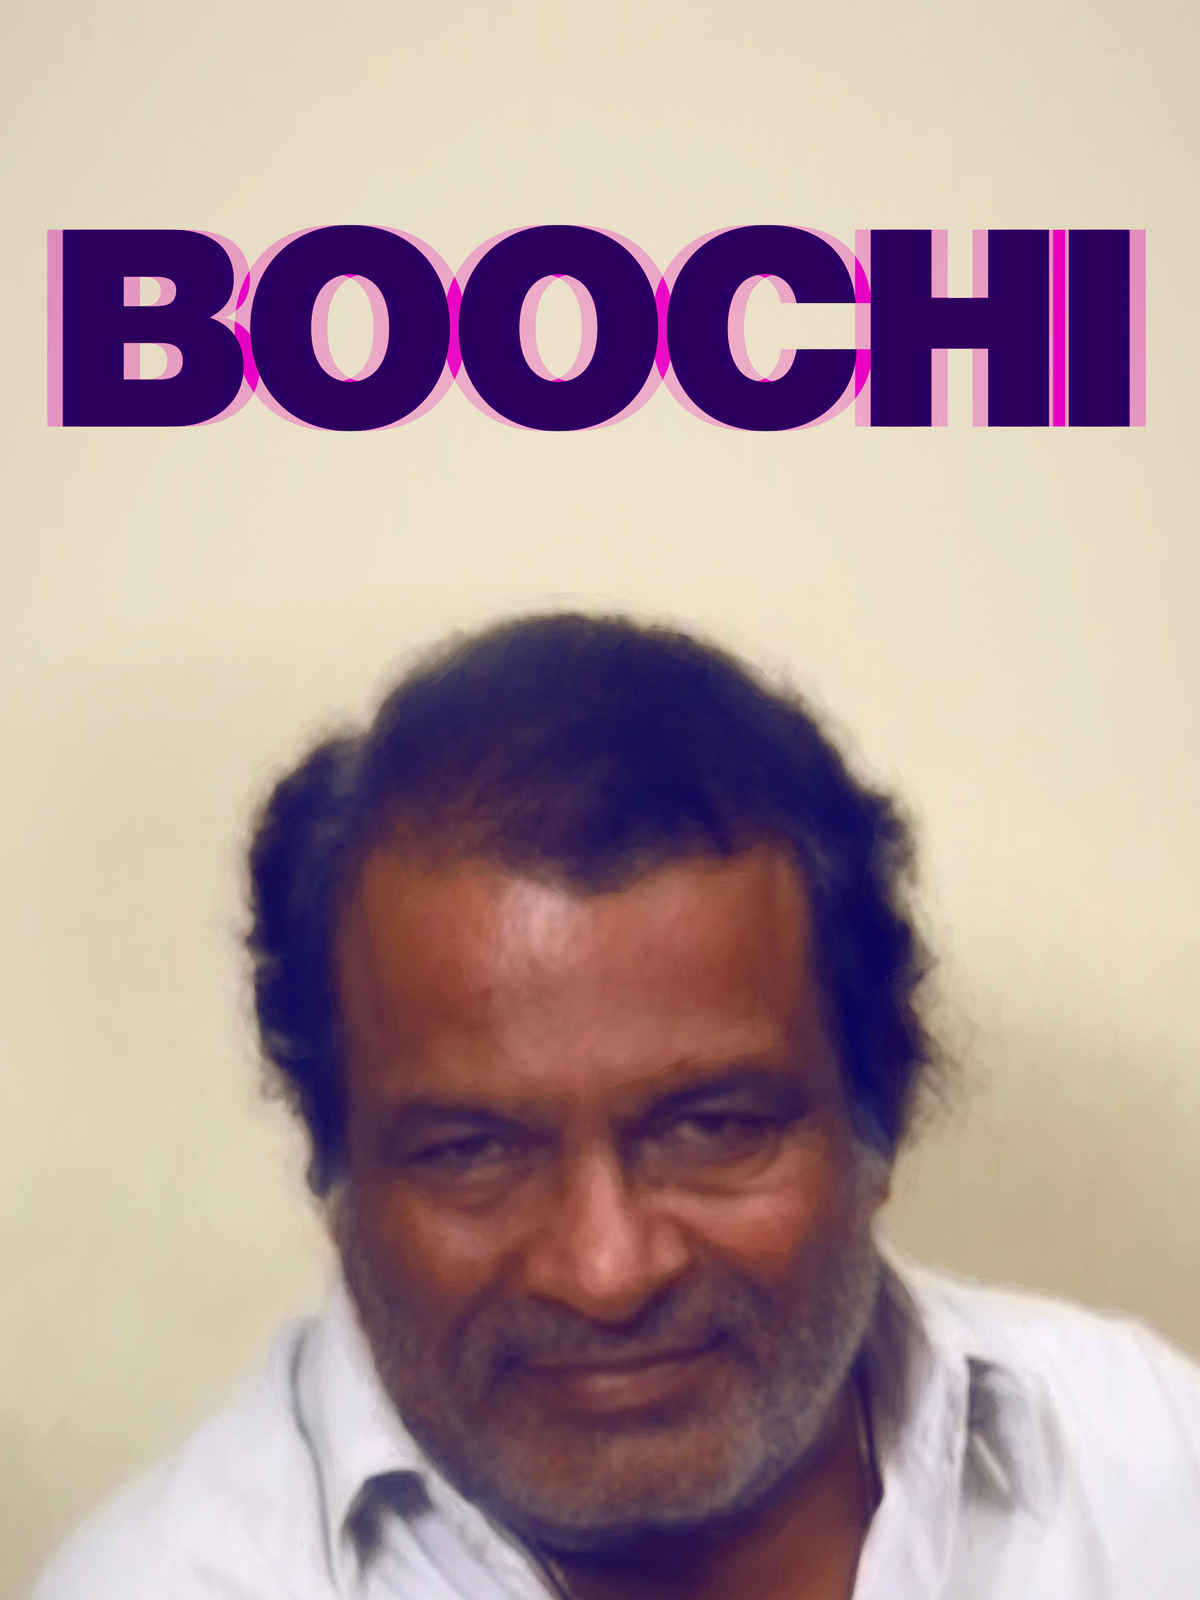 Boochi